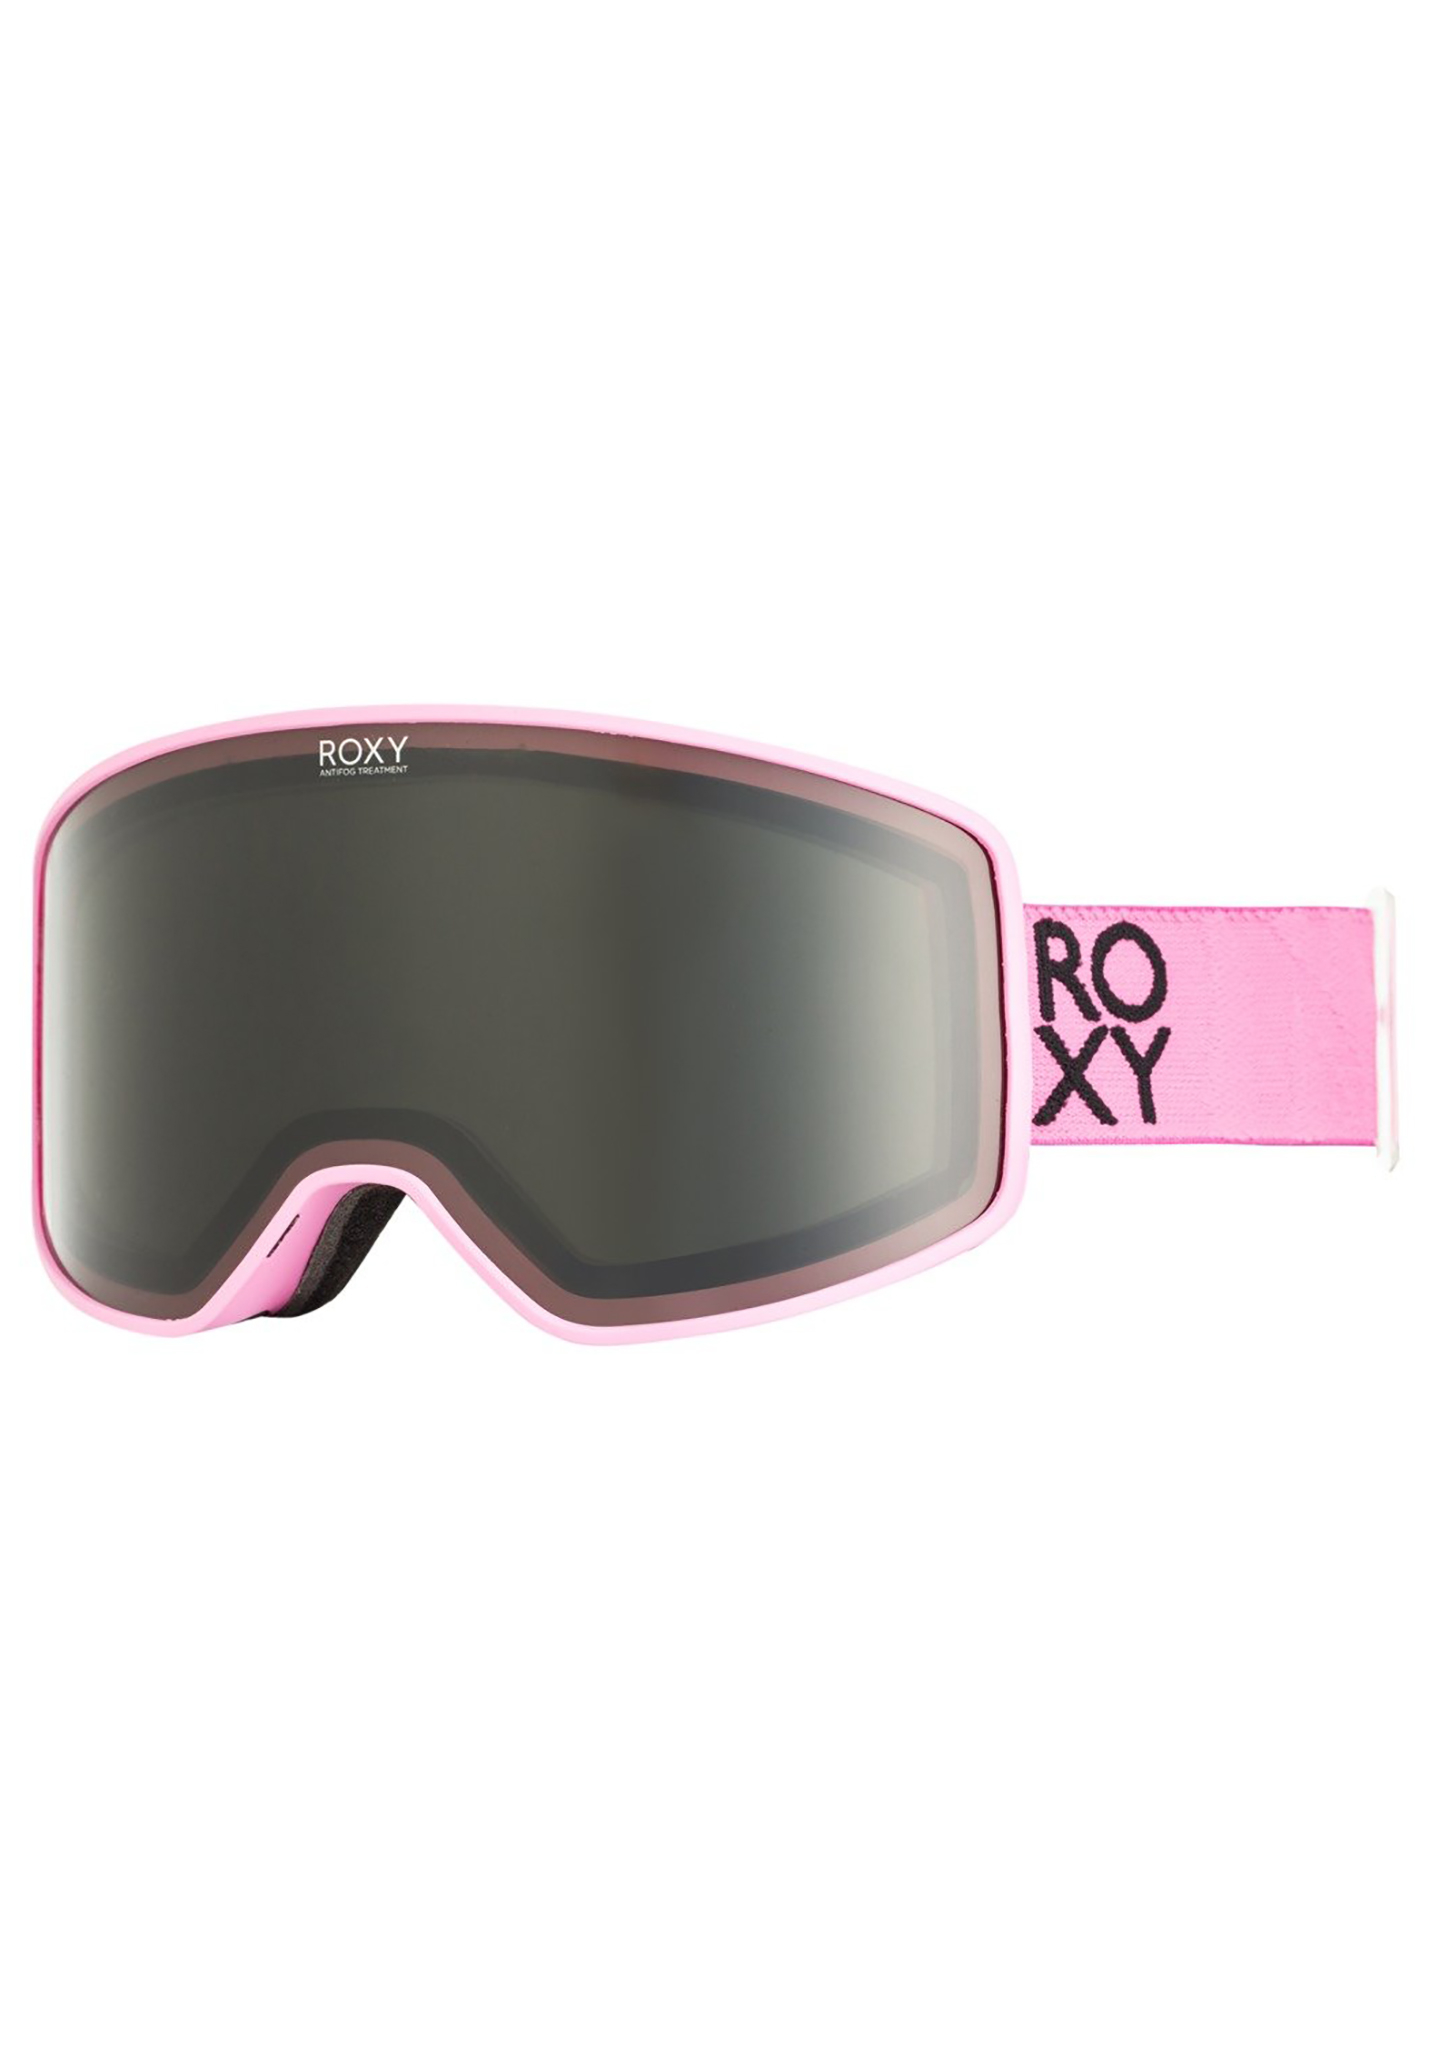 Roxy Storm Snowboardbrillen Ersatzgläser shocking pink One Size